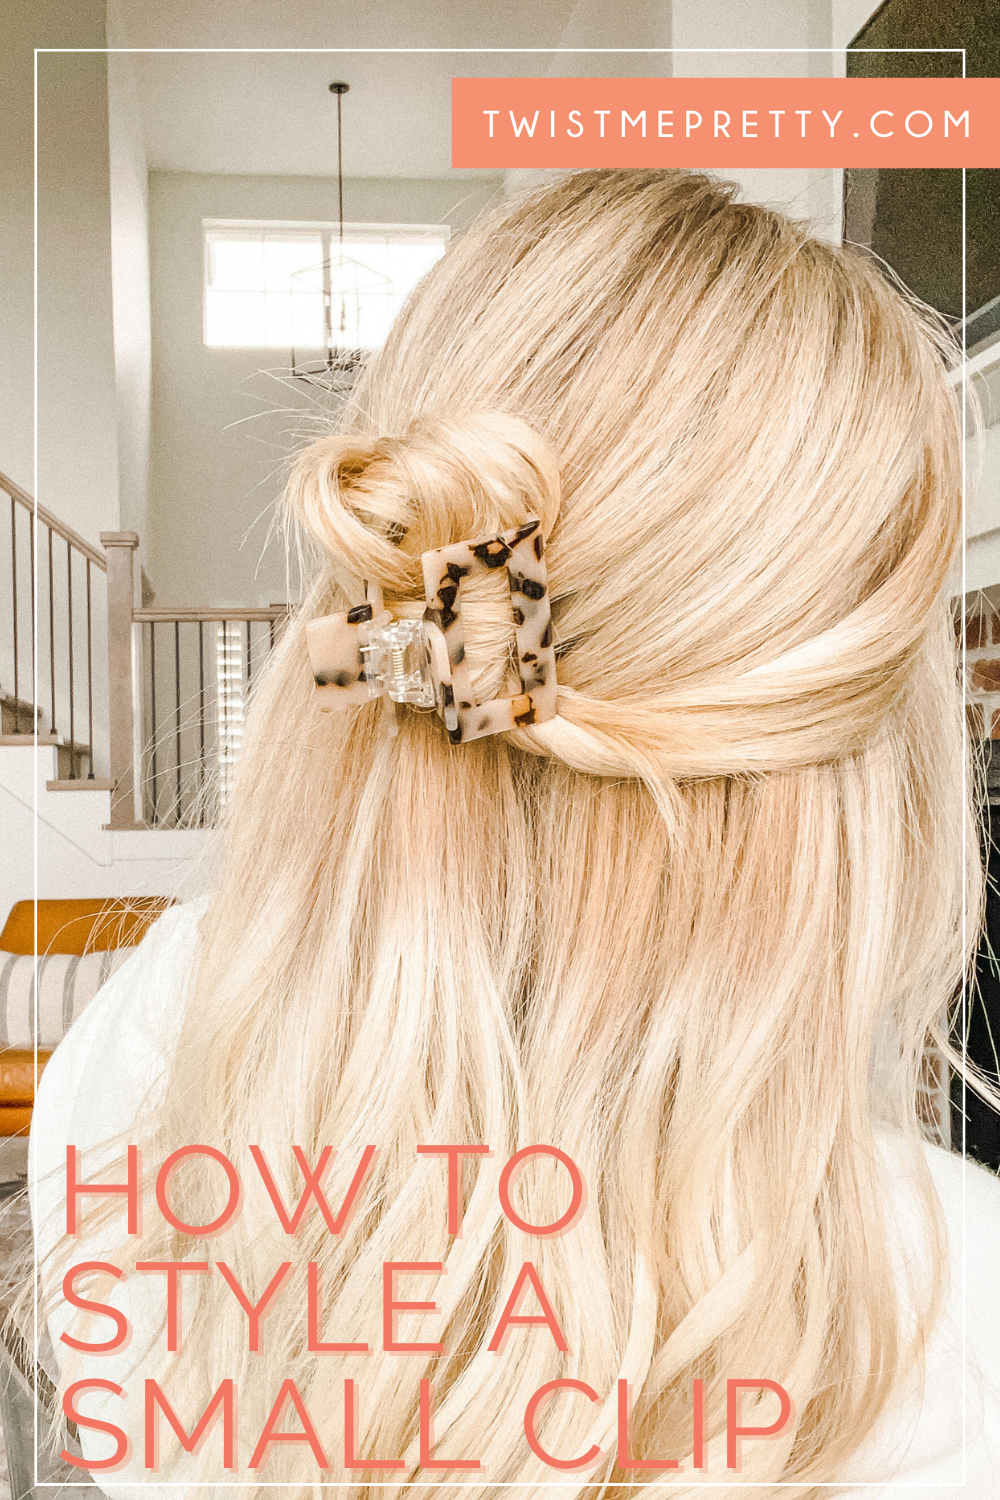 Mini Flower Hair Clips | Ball hairstyles, Small hair clips, Wedding hair  clips